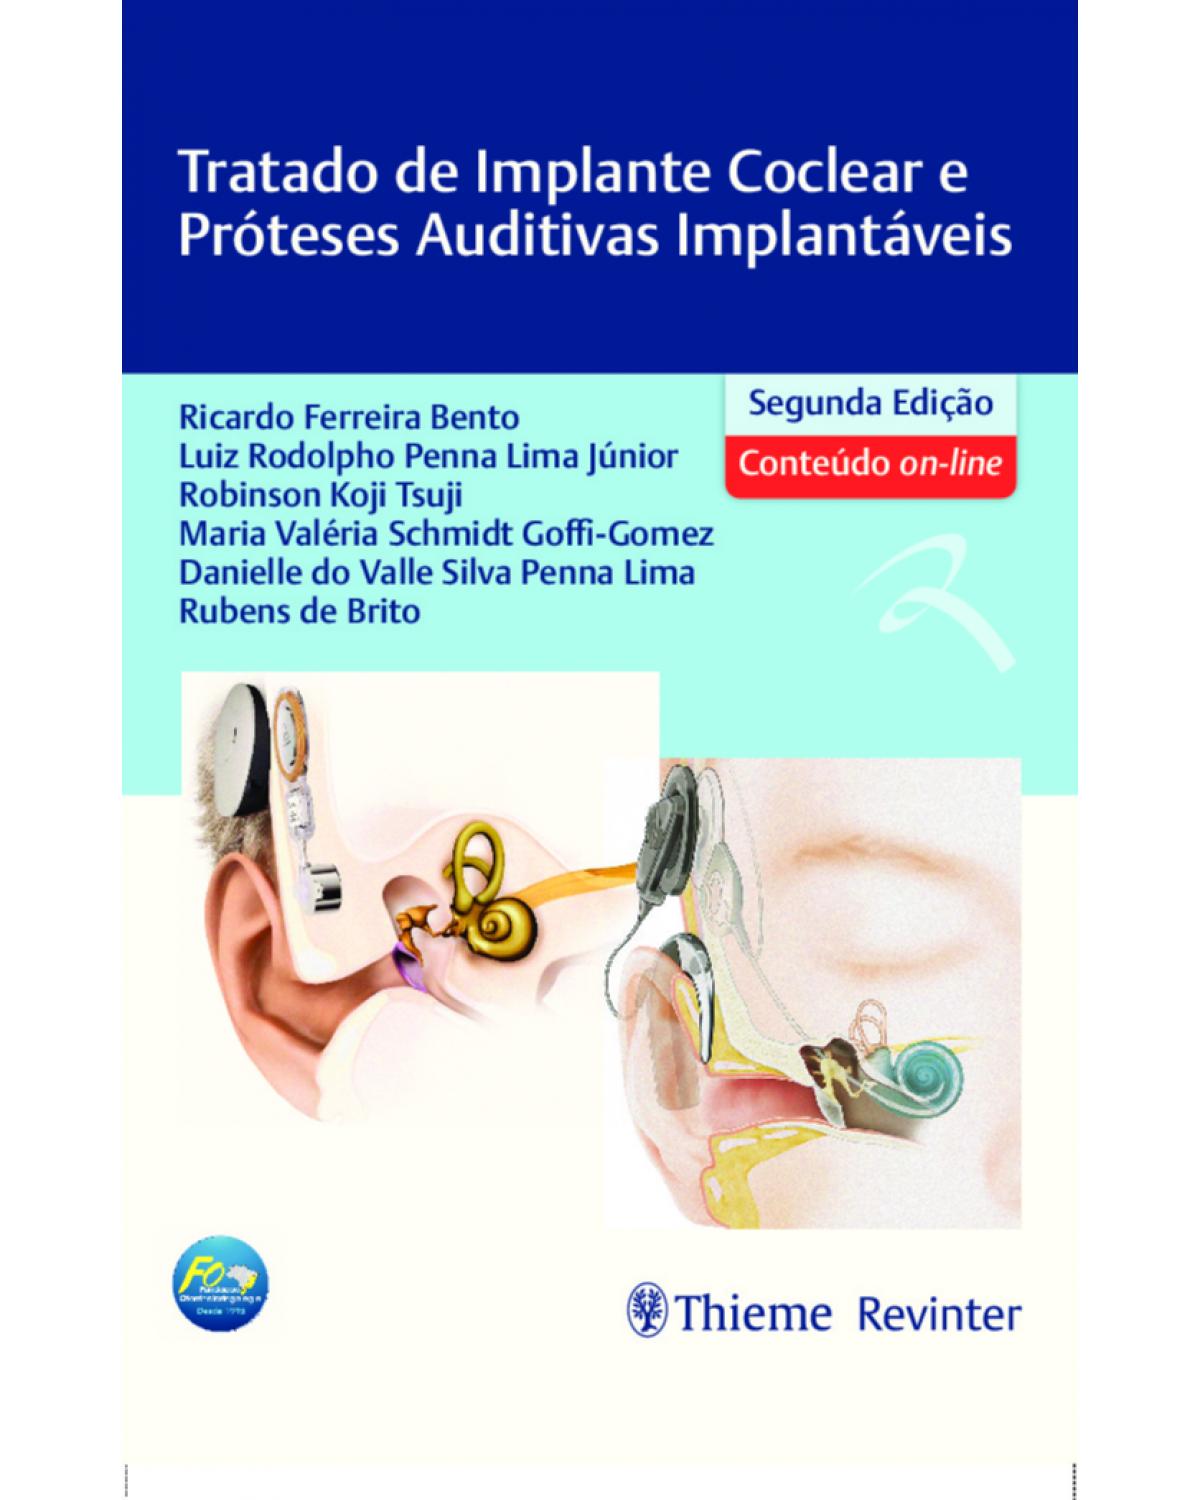 Tratado de implante coclear e próteses auditivas implantáveis - 2ª Edição | 2021